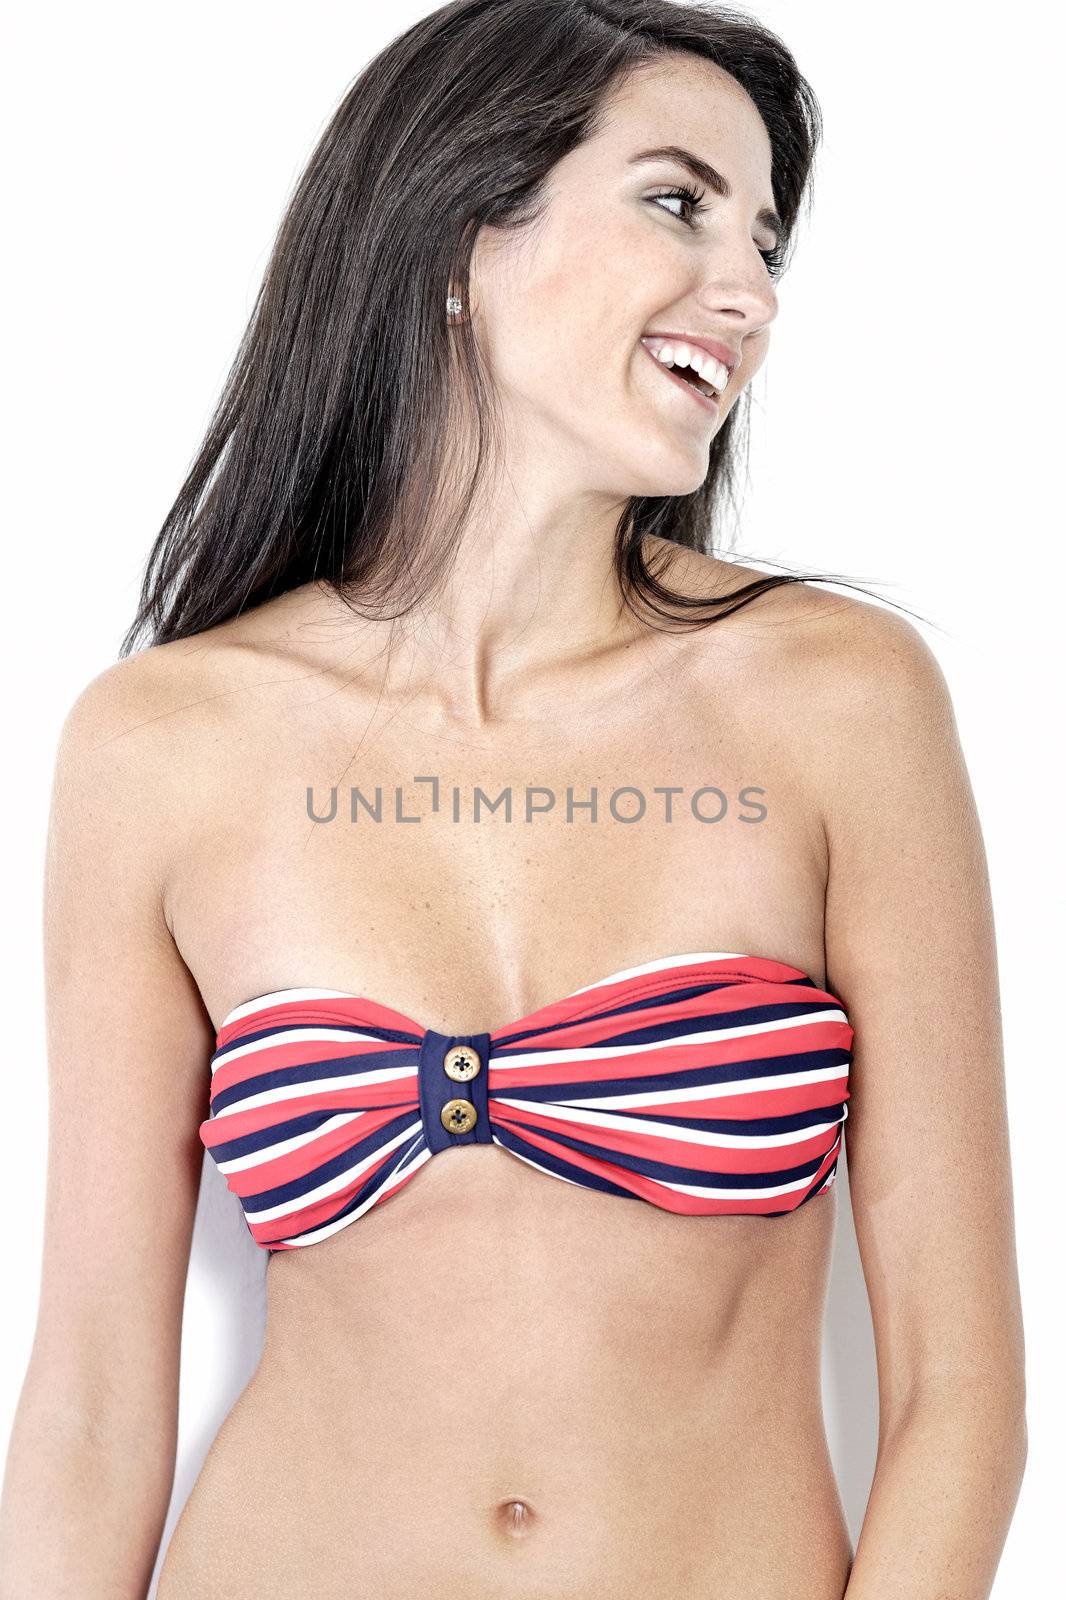 Beautiful sexy woman in red striped bikini smiling and cheerful